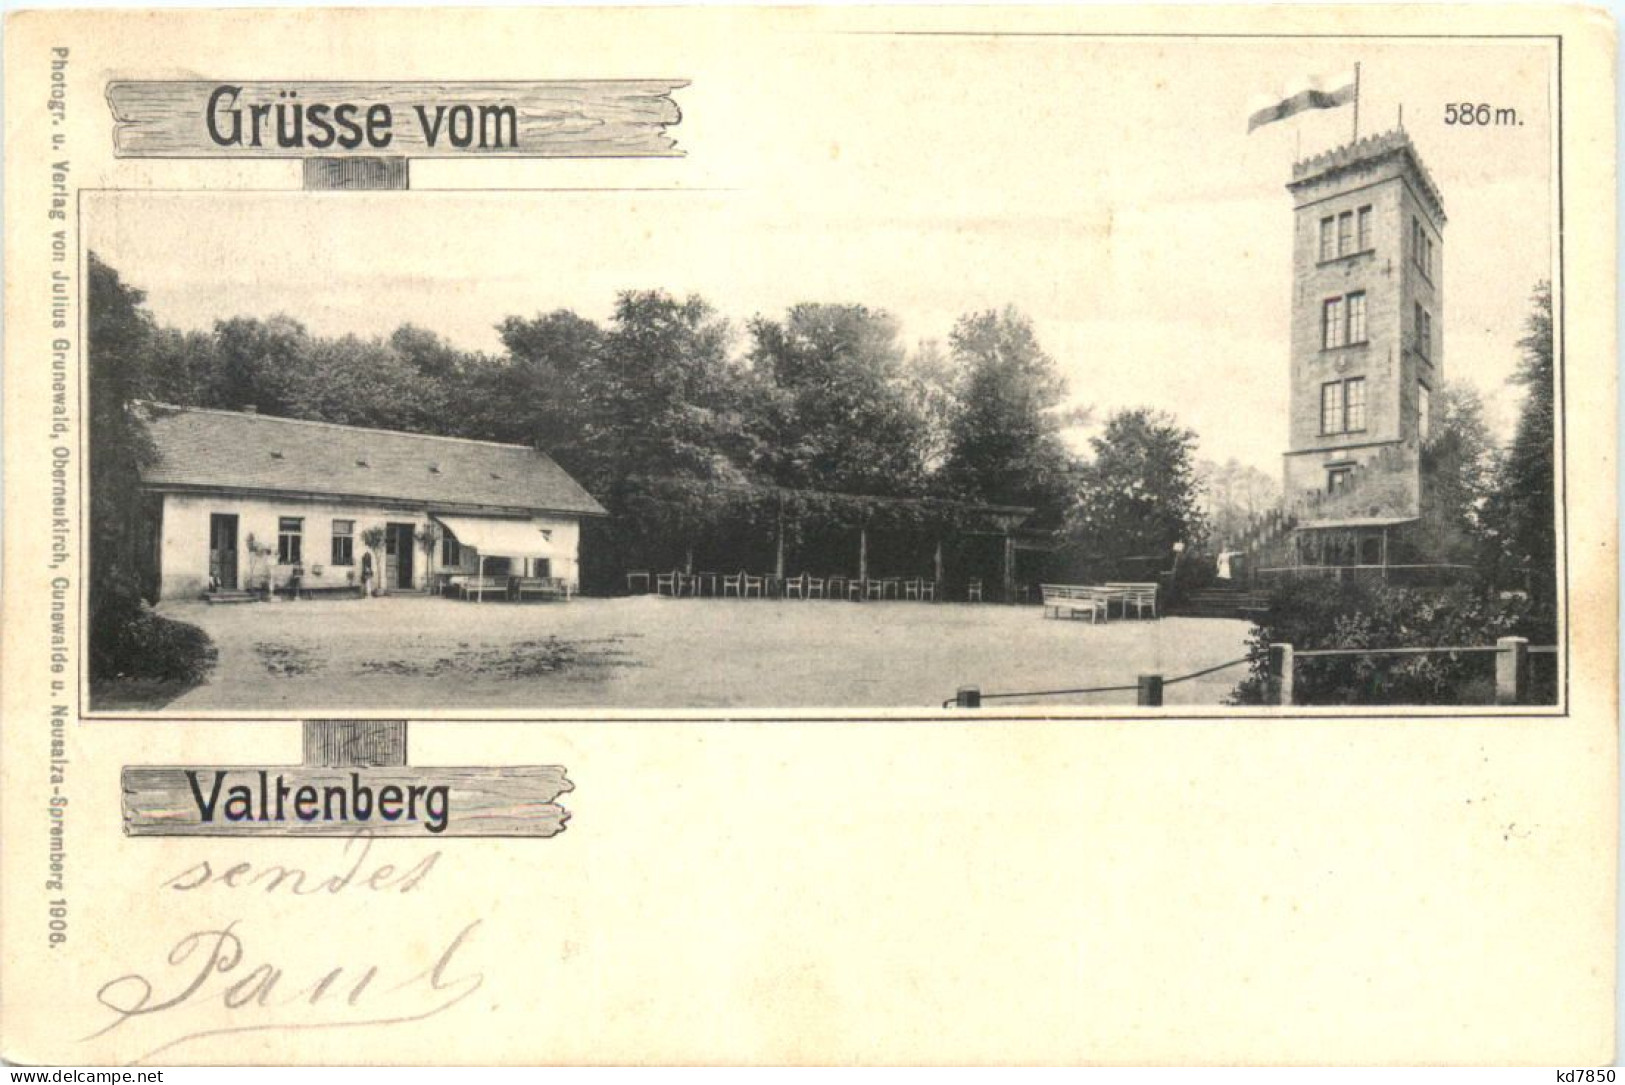 Grüsse Vom Valtenberg - Bautzen